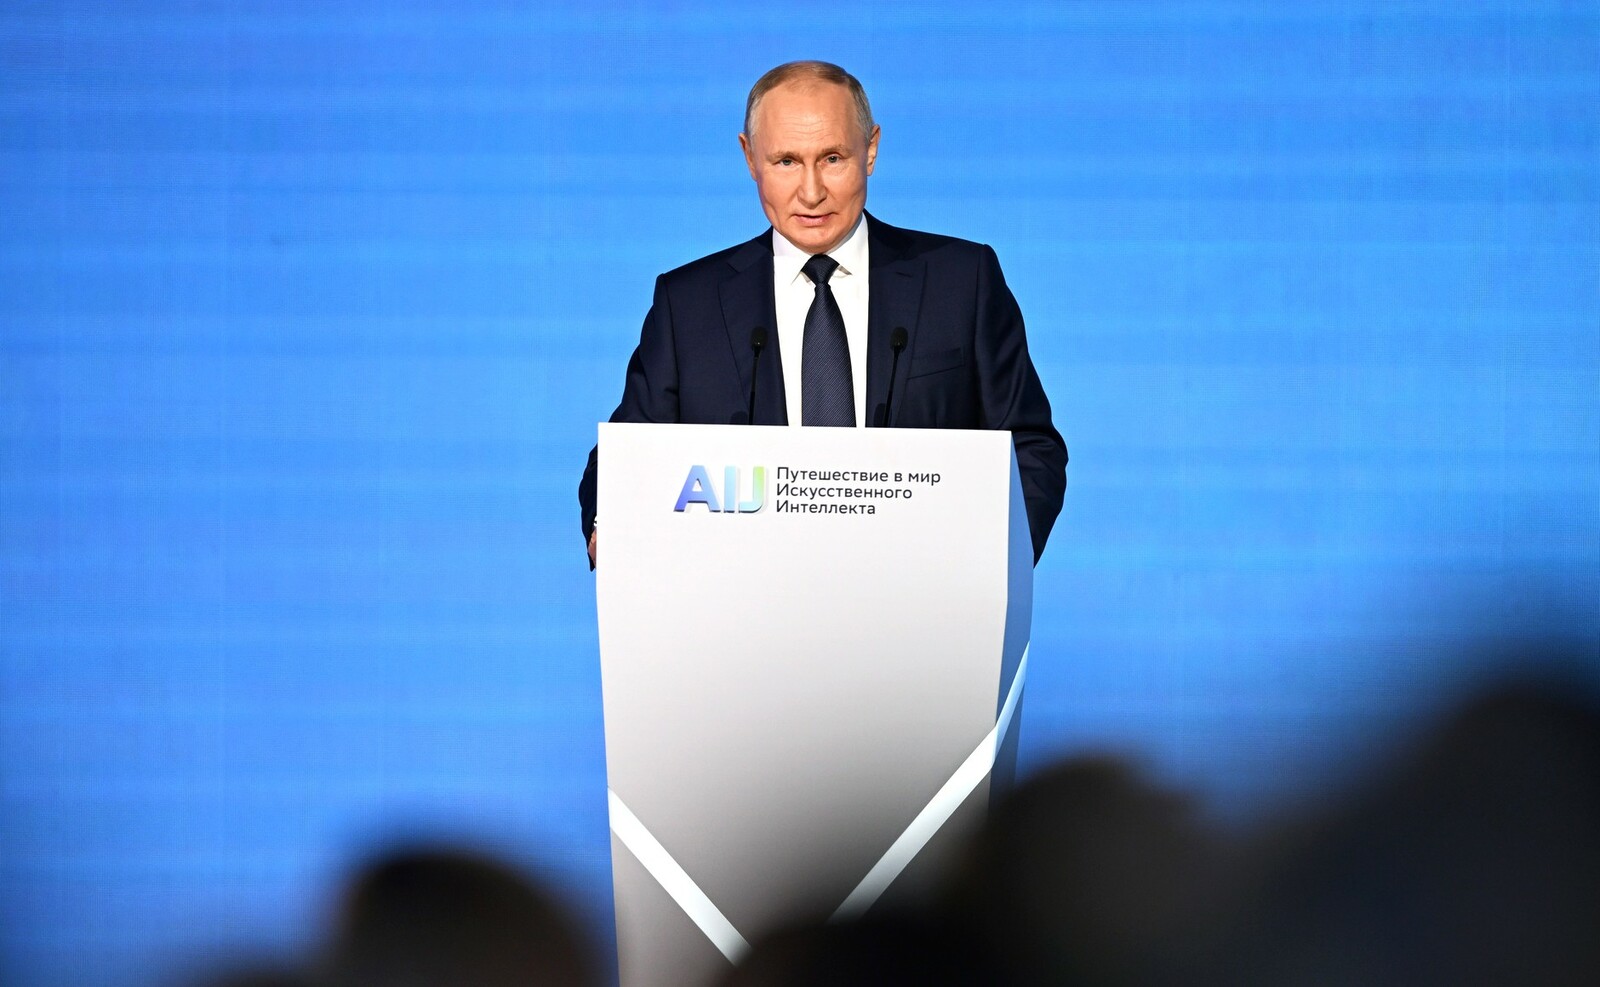 Владимир Путин позитивно отметил Башкирию за активное использование искусственного интеллекта